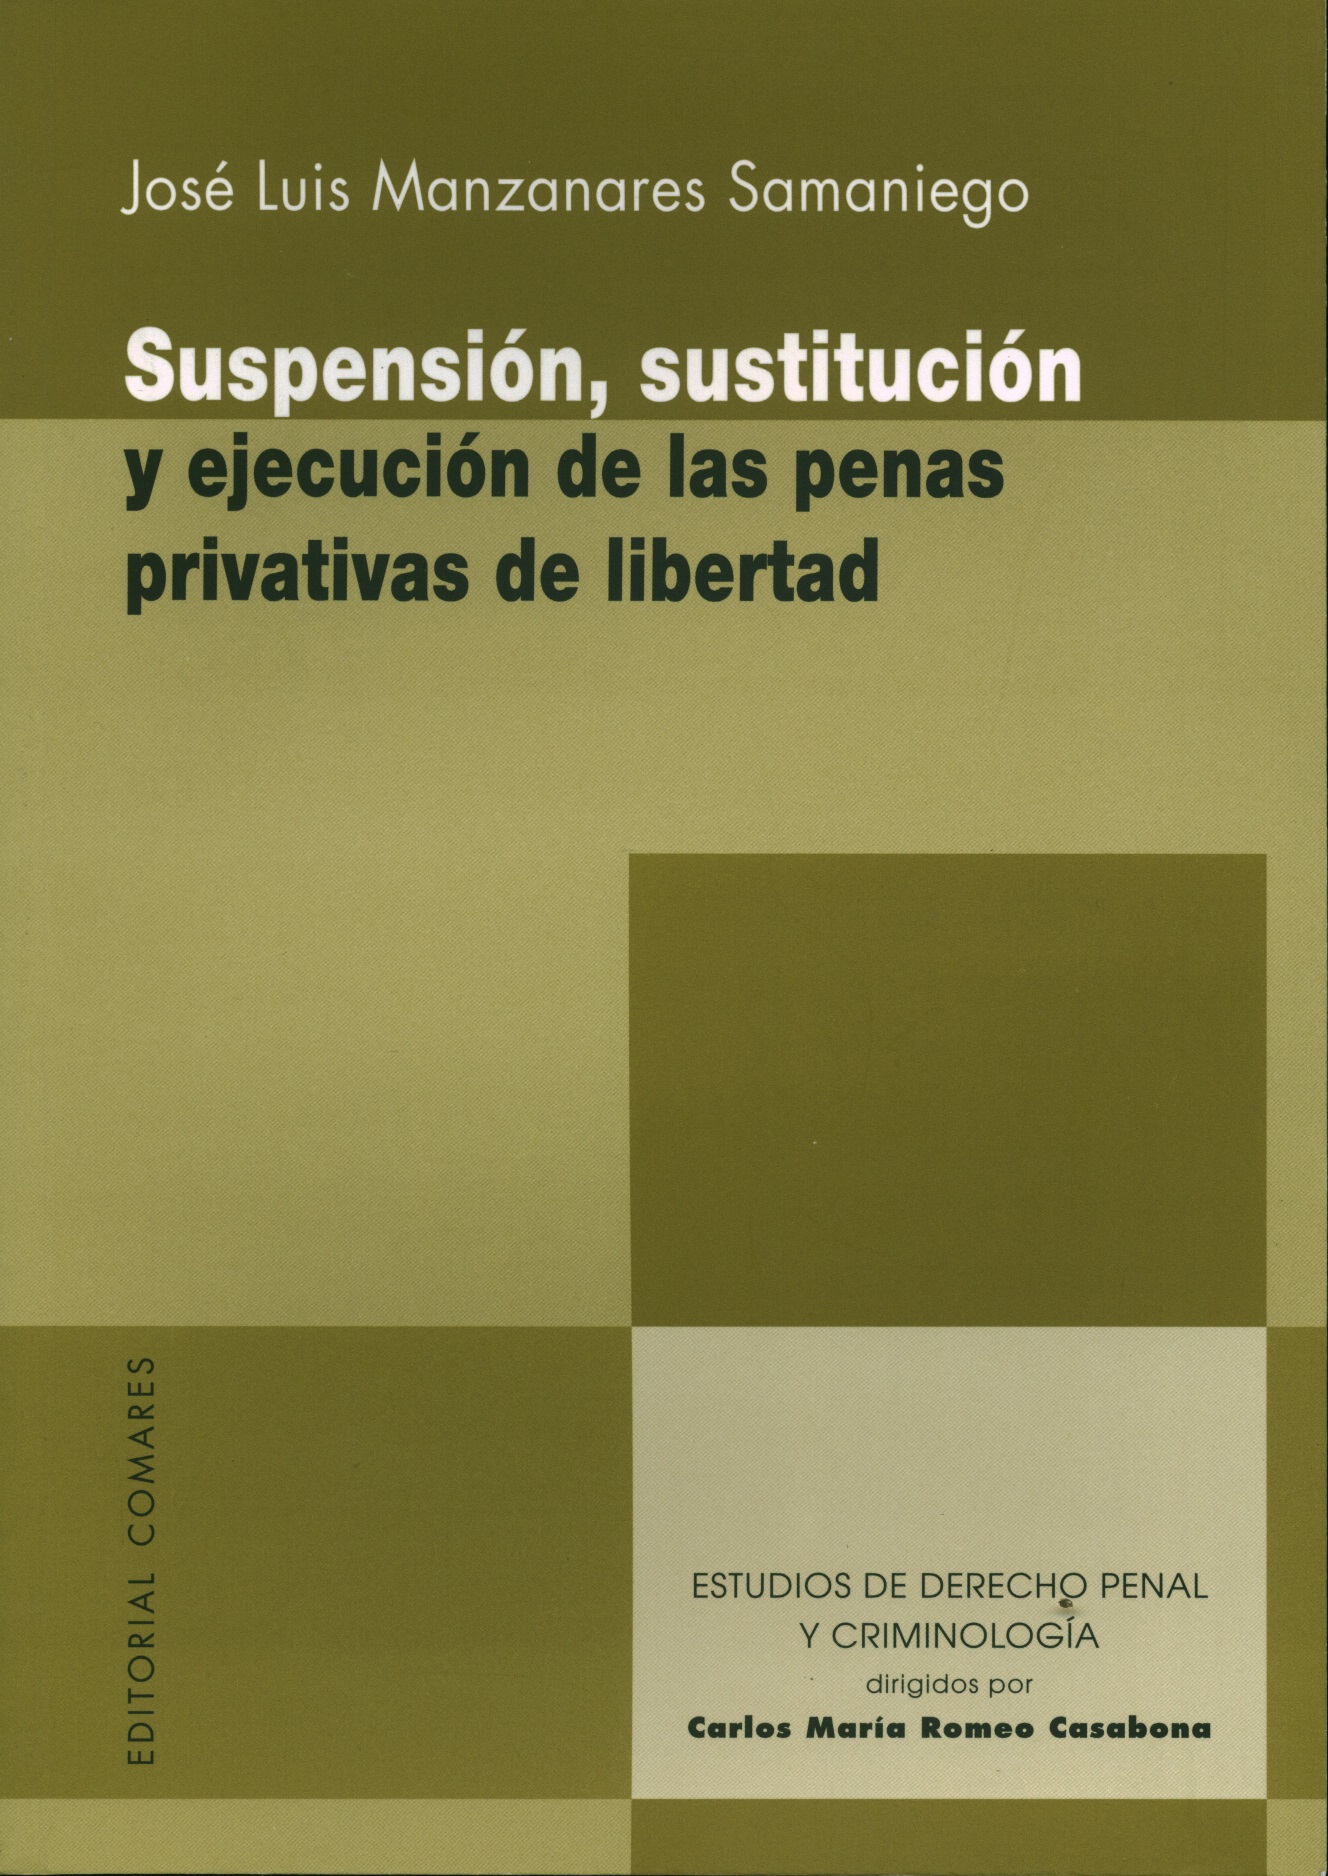 Suspensión, sustitución y ejecución de las penas privativas de libertad